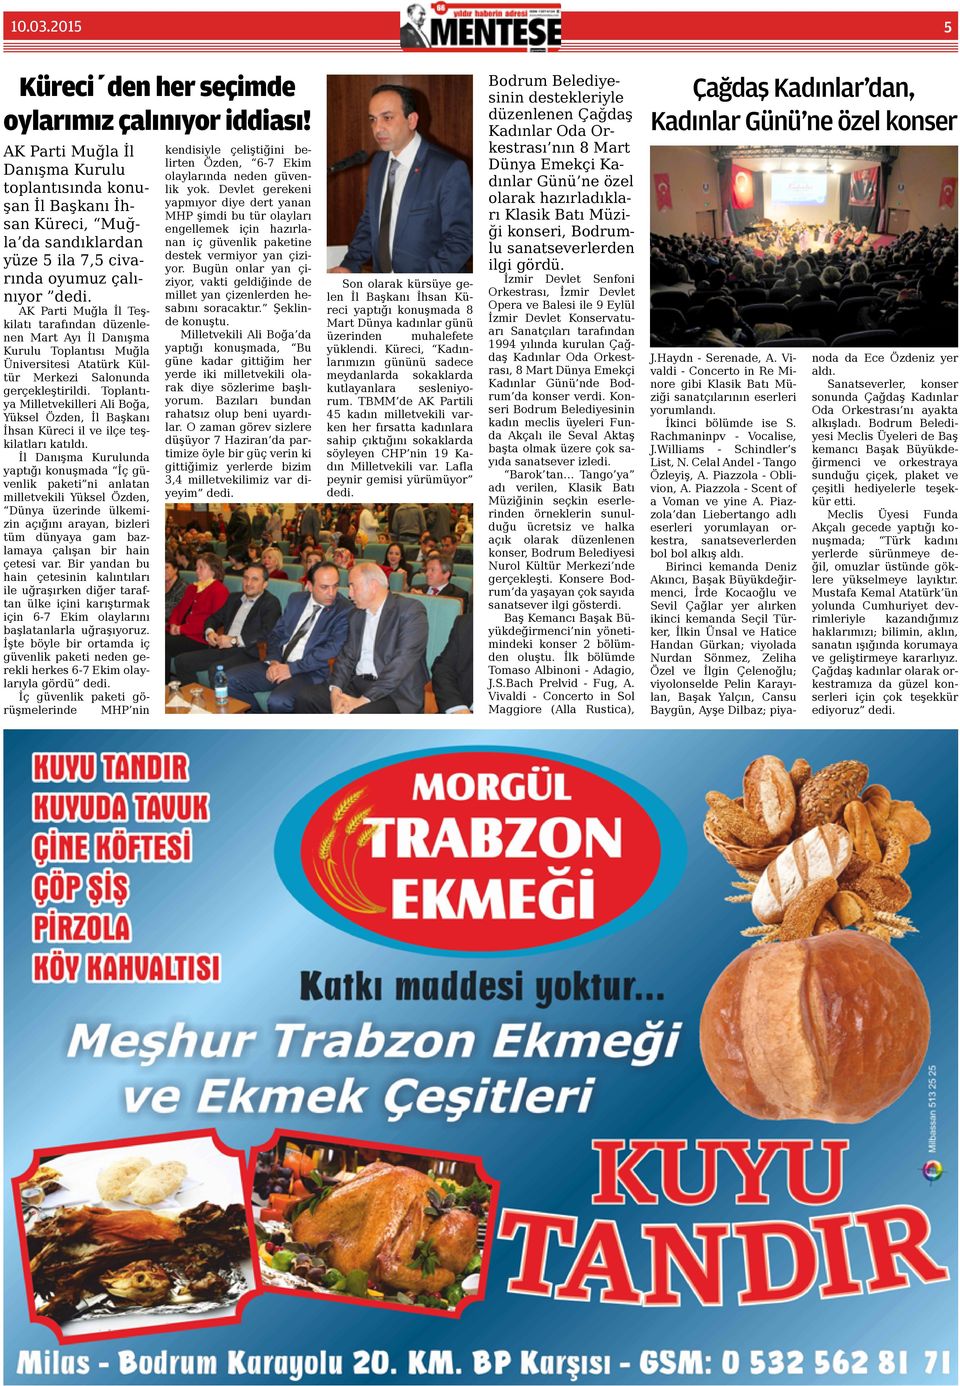 AK Parti Muğla İl Teşkilatı tarafından düzenlenen Mart Ayı İl Danışma Kurulu Toplantısı Muğla Üniversitesi Atatürk Kültür Merkezi Salonunda gerçekleştirildi.